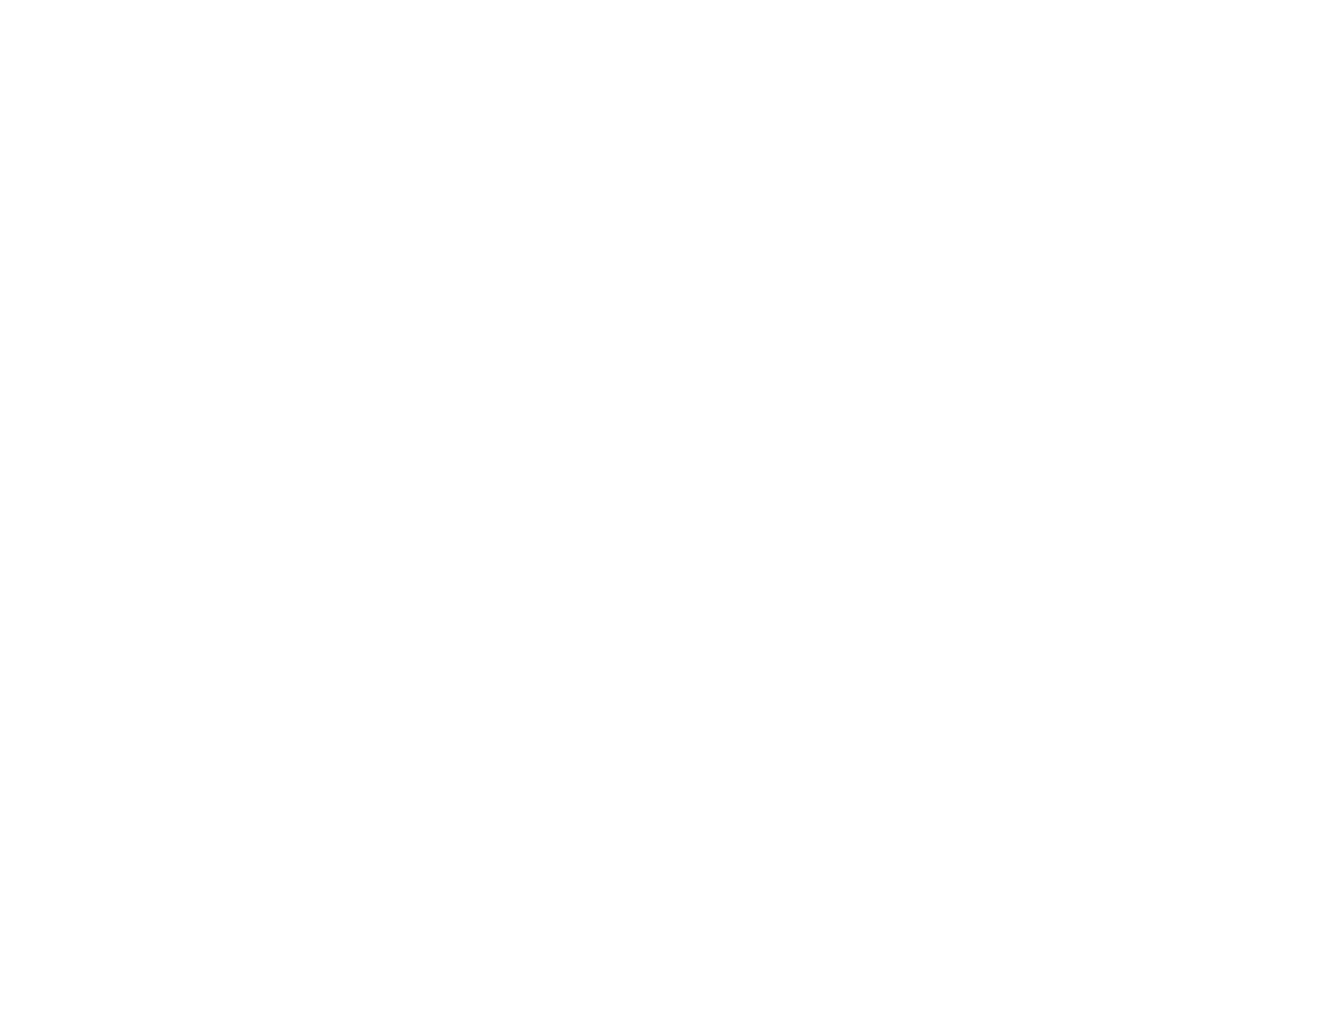 White Ribbon